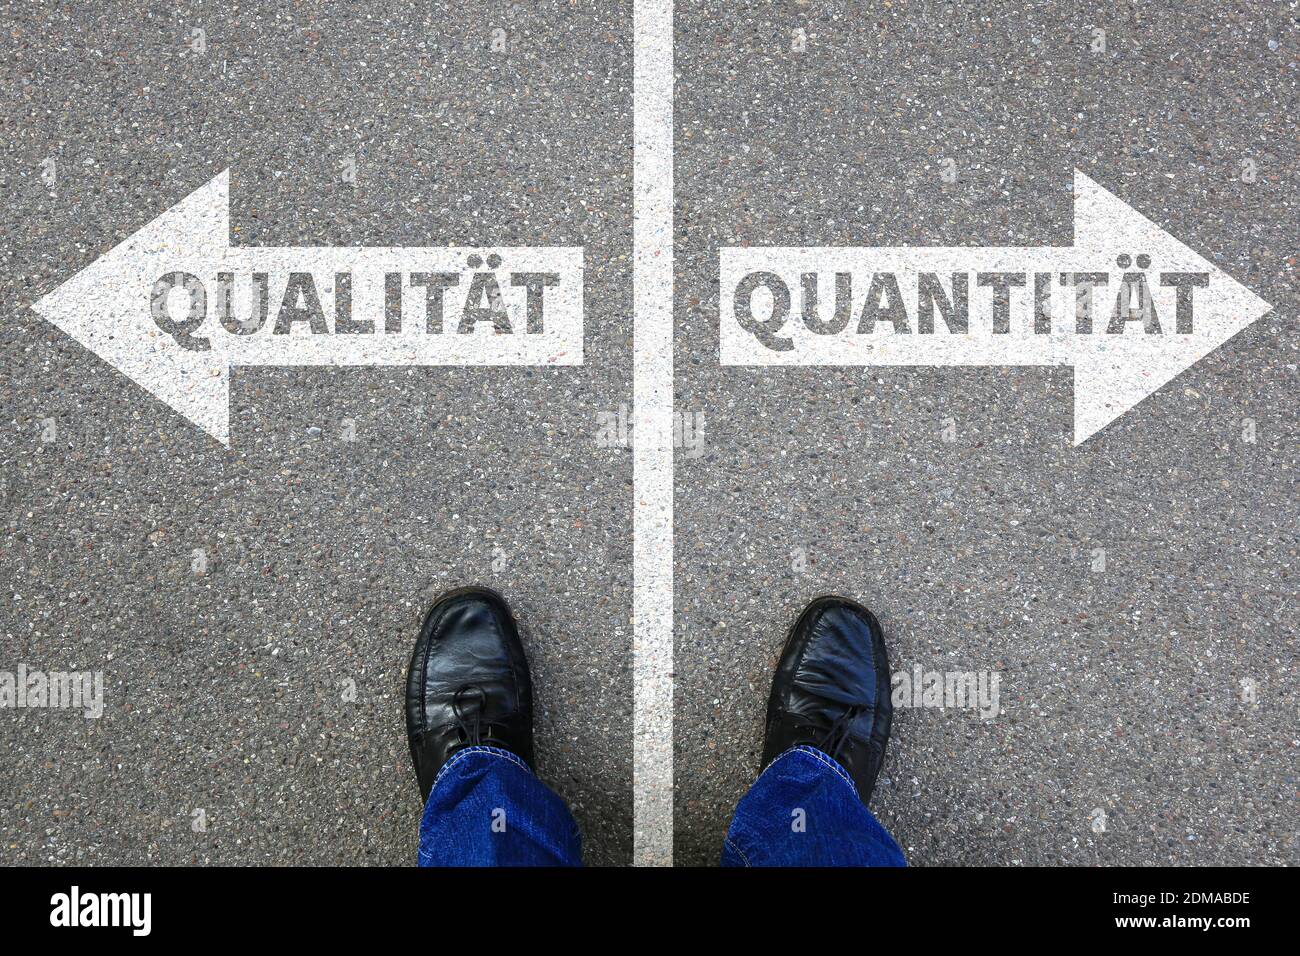 Qualität Quantität Erfolg erfolgreich Business Konzept Entscheidung entscheiden Wahl wählen Stock Photo